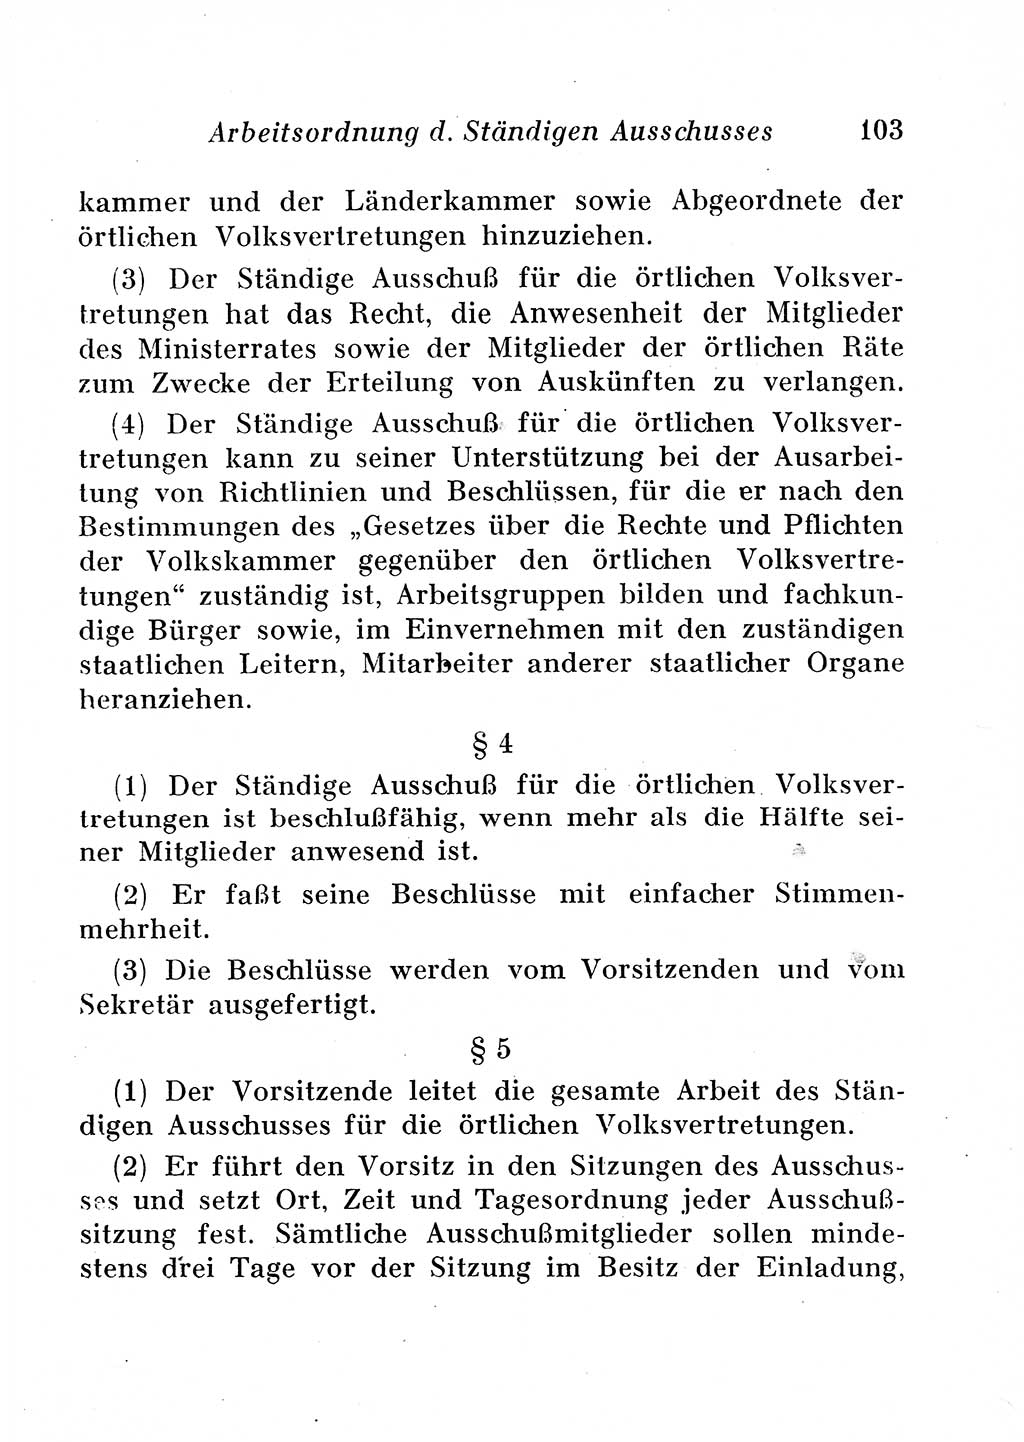 Staats- und verwaltungsrechtliche Gesetze der Deutschen Demokratischen Republik (DDR) 1958, Seite 103 (StVerwR Ges. DDR 1958, S. 103)